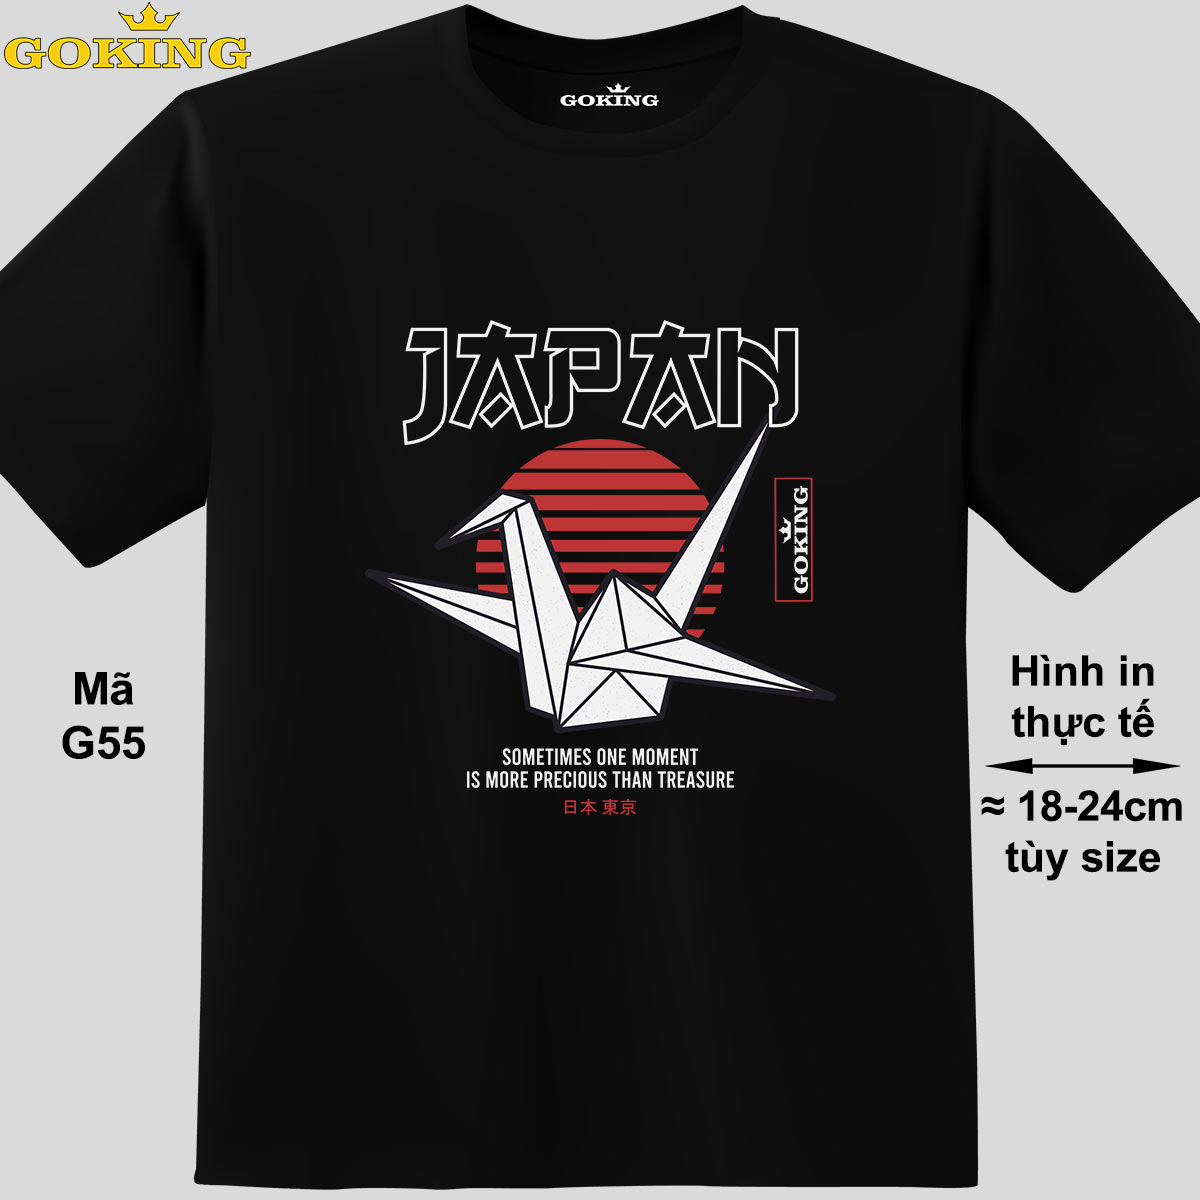 JAPAN, mã G55. Hãy tỏa sáng như kim cương, qua chiếc áo thun Goking siêu hot cho nam nữ trẻ em, áo phông cặp đôi, gia đình, đội nhóm